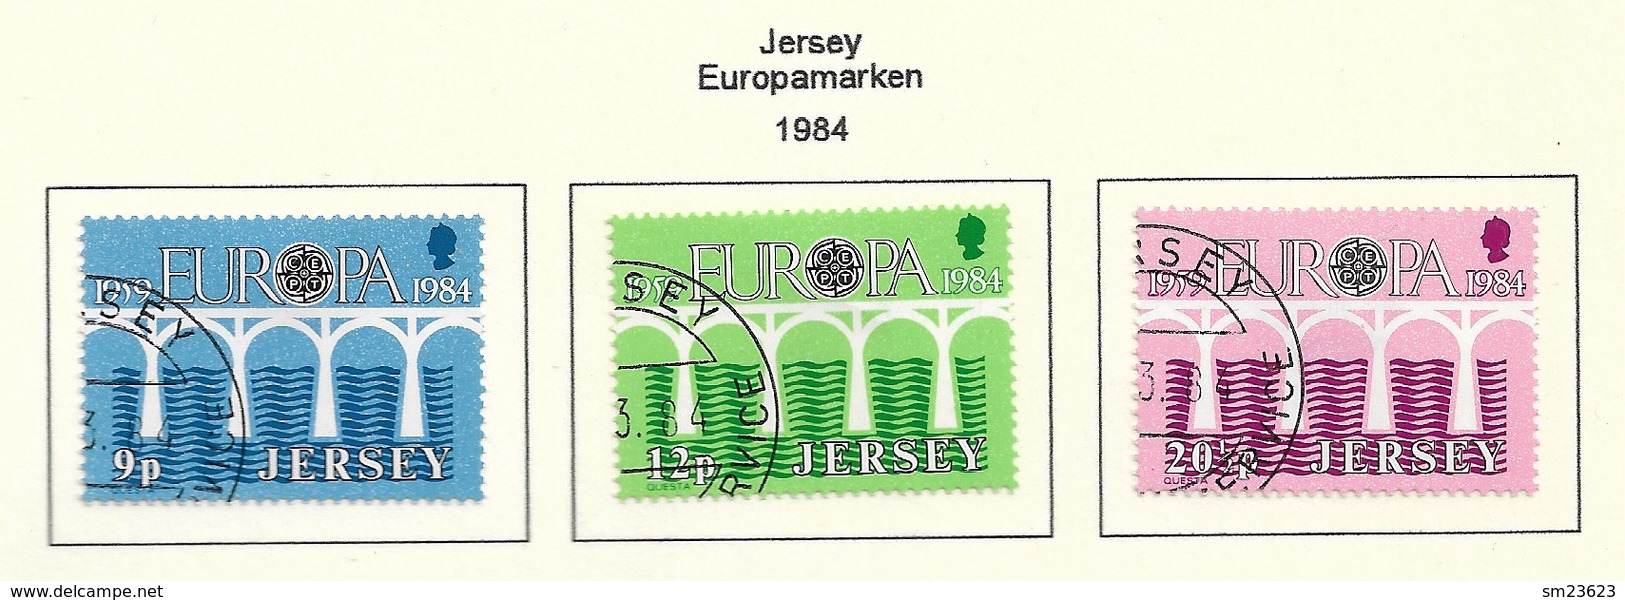 GB - Jersey  1984  Mi.Nr. 320 / 322 , EUROPA CEPT Brücken 25 Jahre Europäische Konferenz - Gestempelt / Fine Used / (o) - 1984